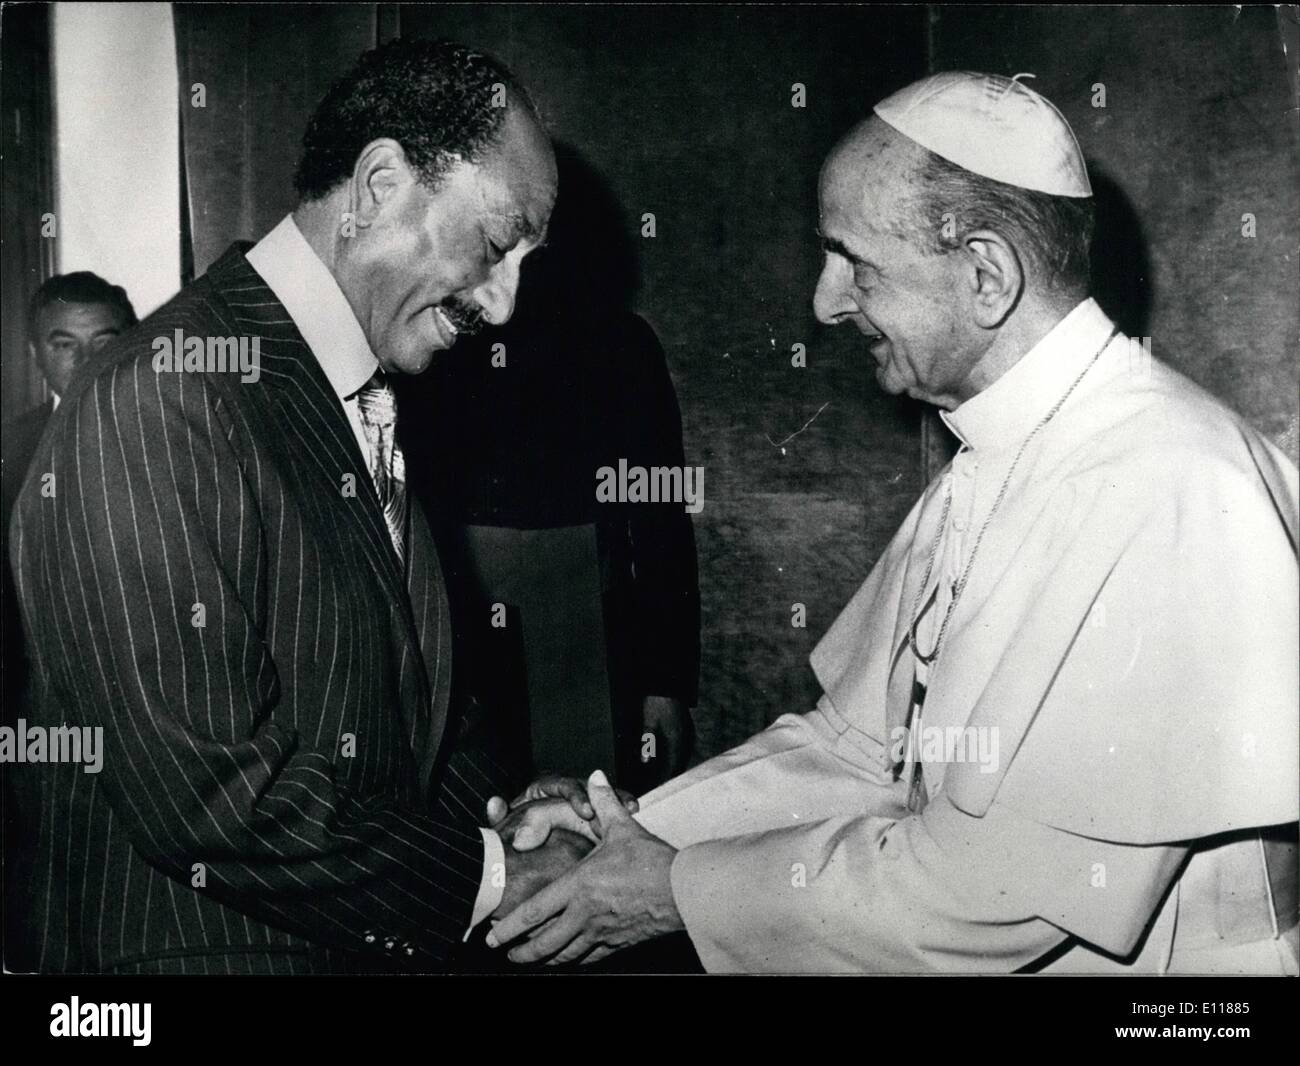 Avril 04, 1976 - Vatican : le Pape Paul VI a reçu en audience privée le Président Anouar El Sadate en Égypte qui était accompagné de son épouse. Banque D'Images